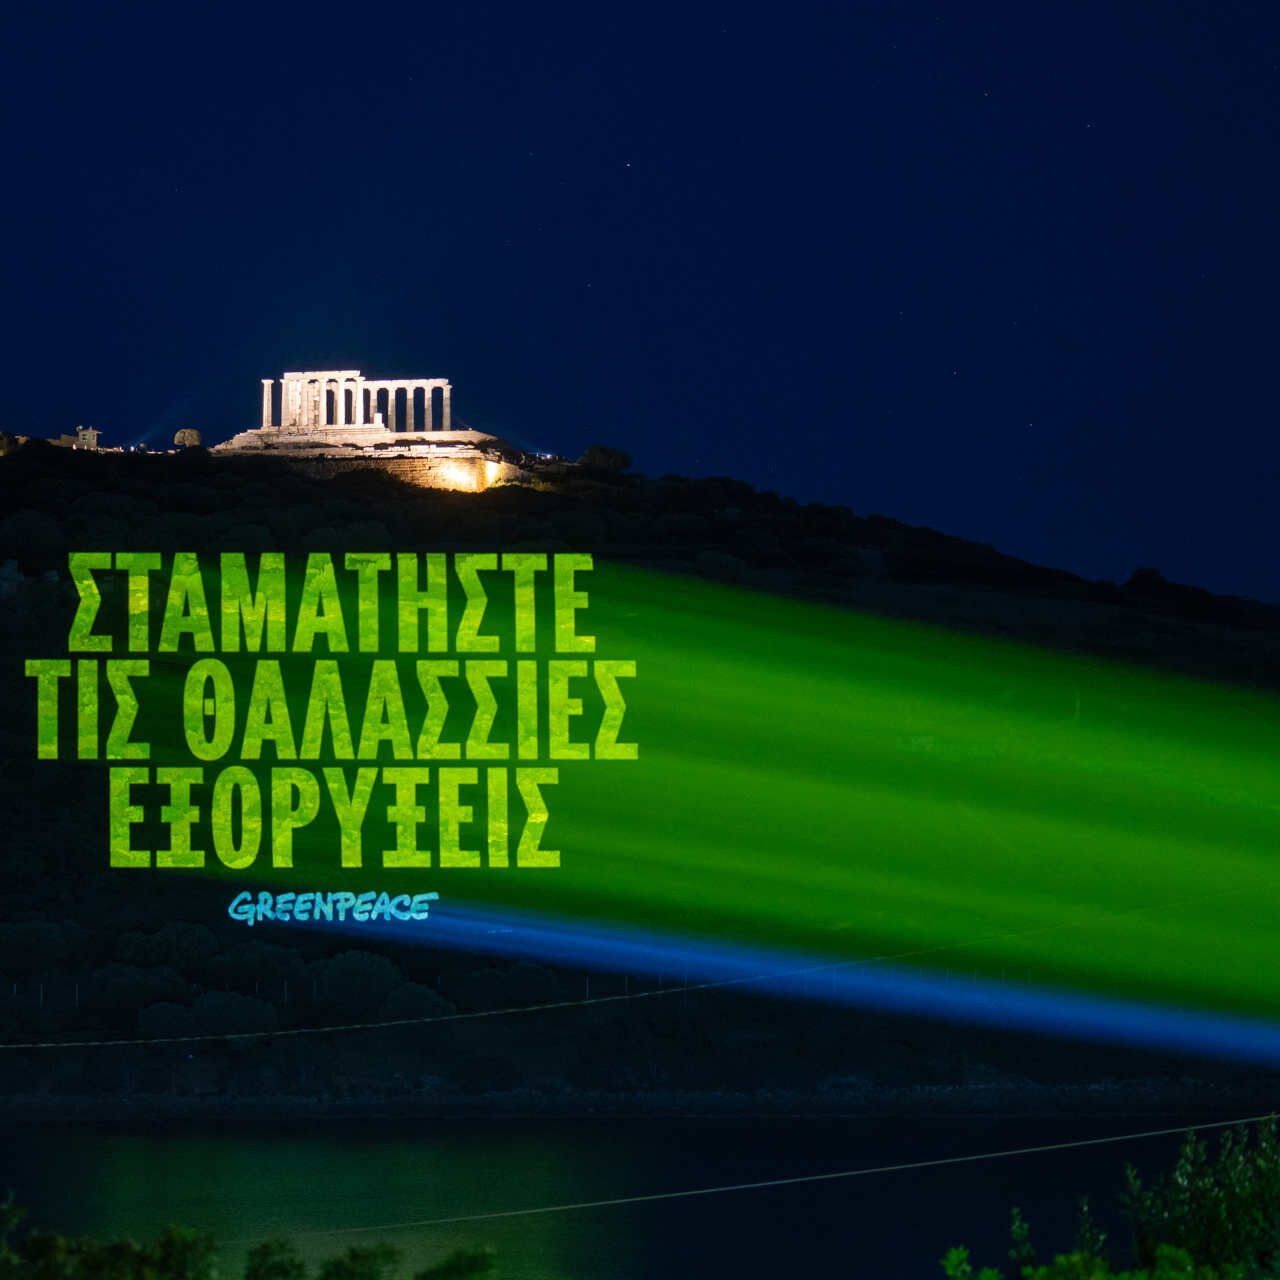 Grècia: el missatge en grec que es llegeix